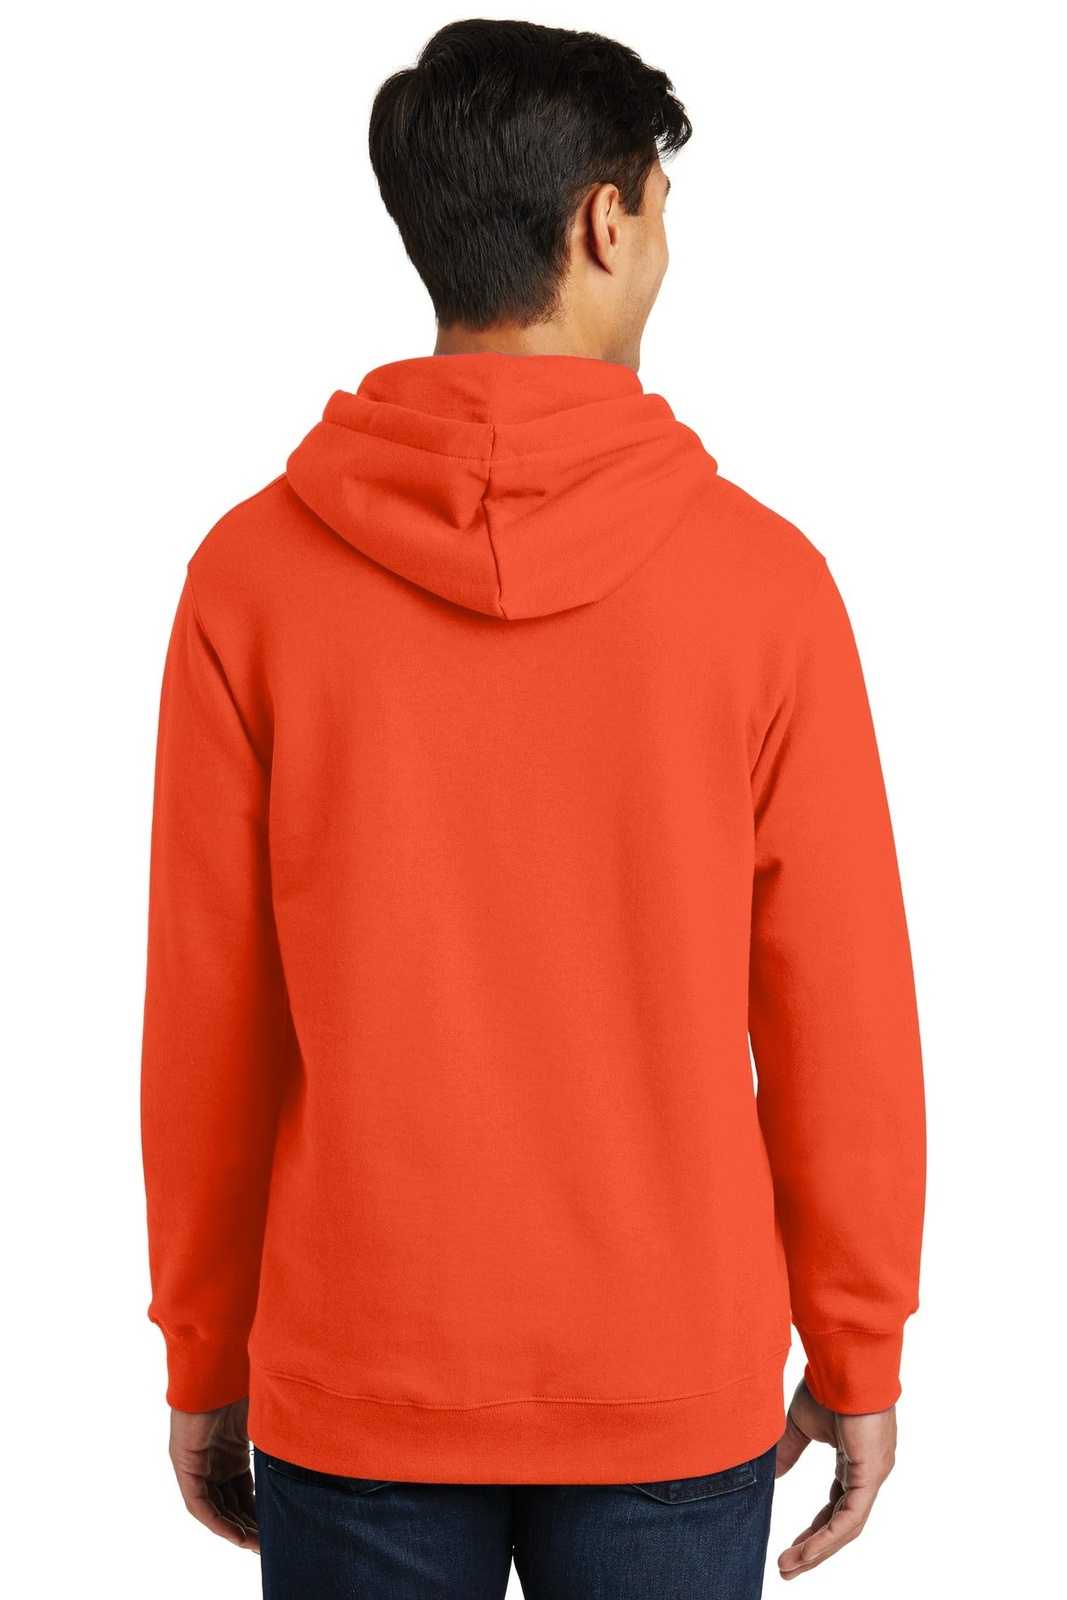 Port & Company PC850H Fan Favorite Fleece Pullover Hooded Sweatshirt - Orange - HIT a Double - 1